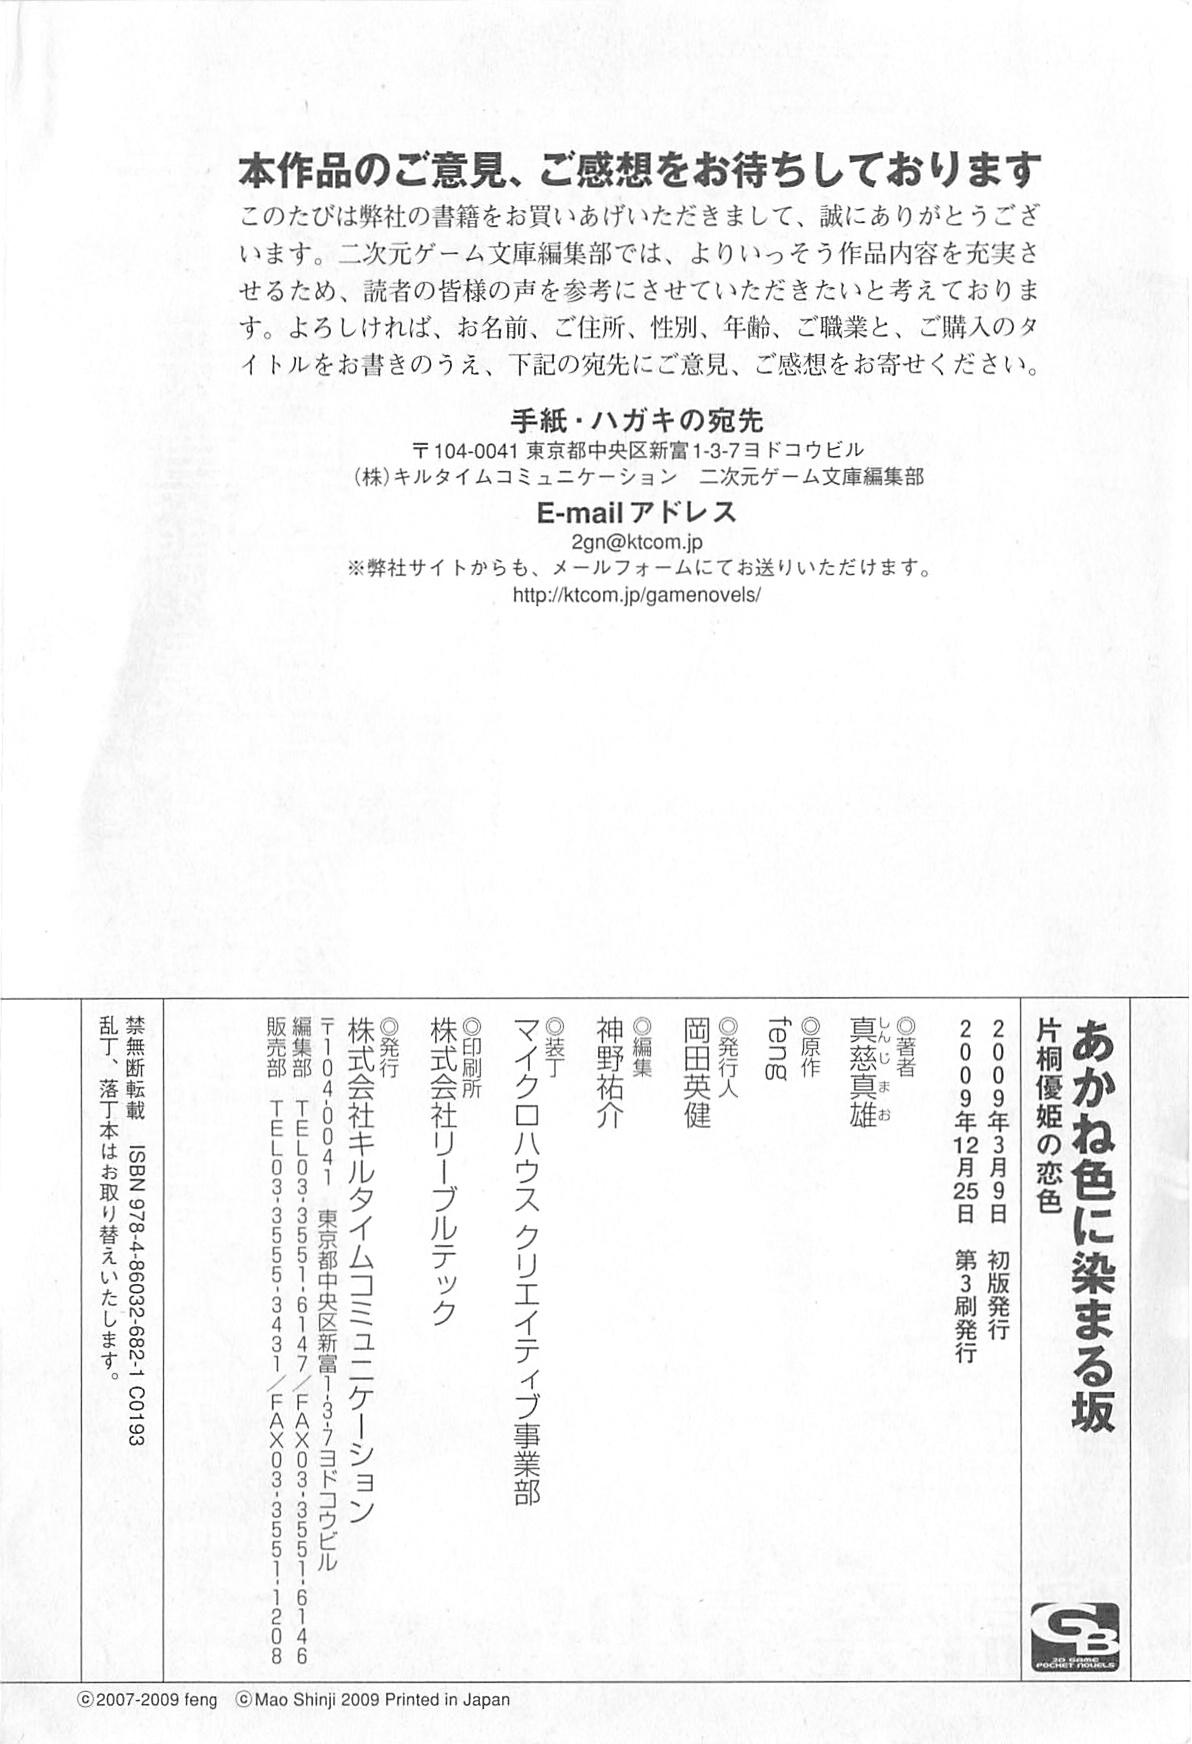 [Shinji Mao, Pierre Yoshio] Akaneiro ni Somaru Saka - Katagiri Yuuhi no Koiiro 254